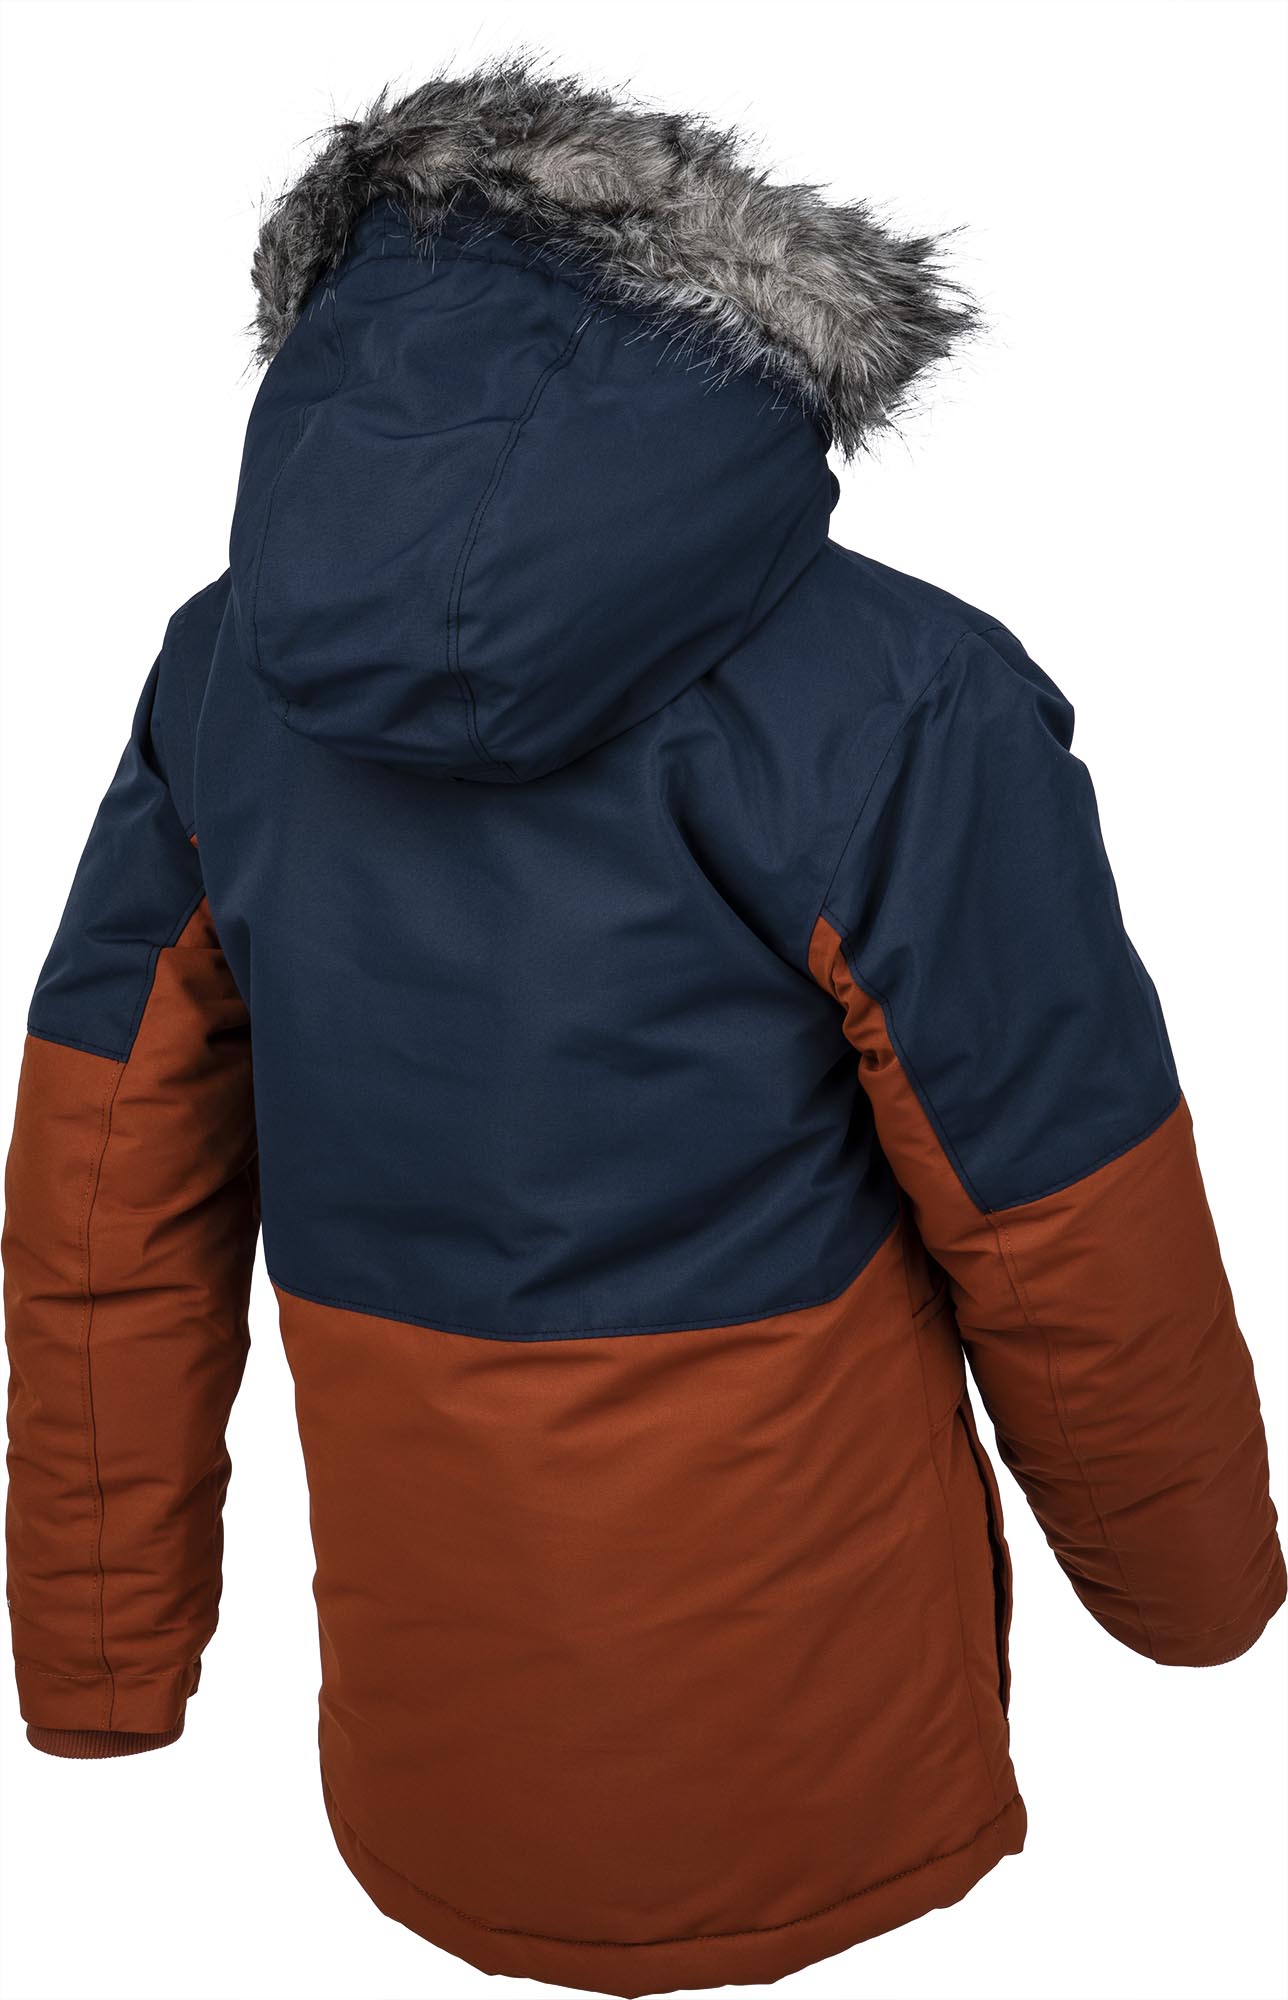 Kids' winter jacket